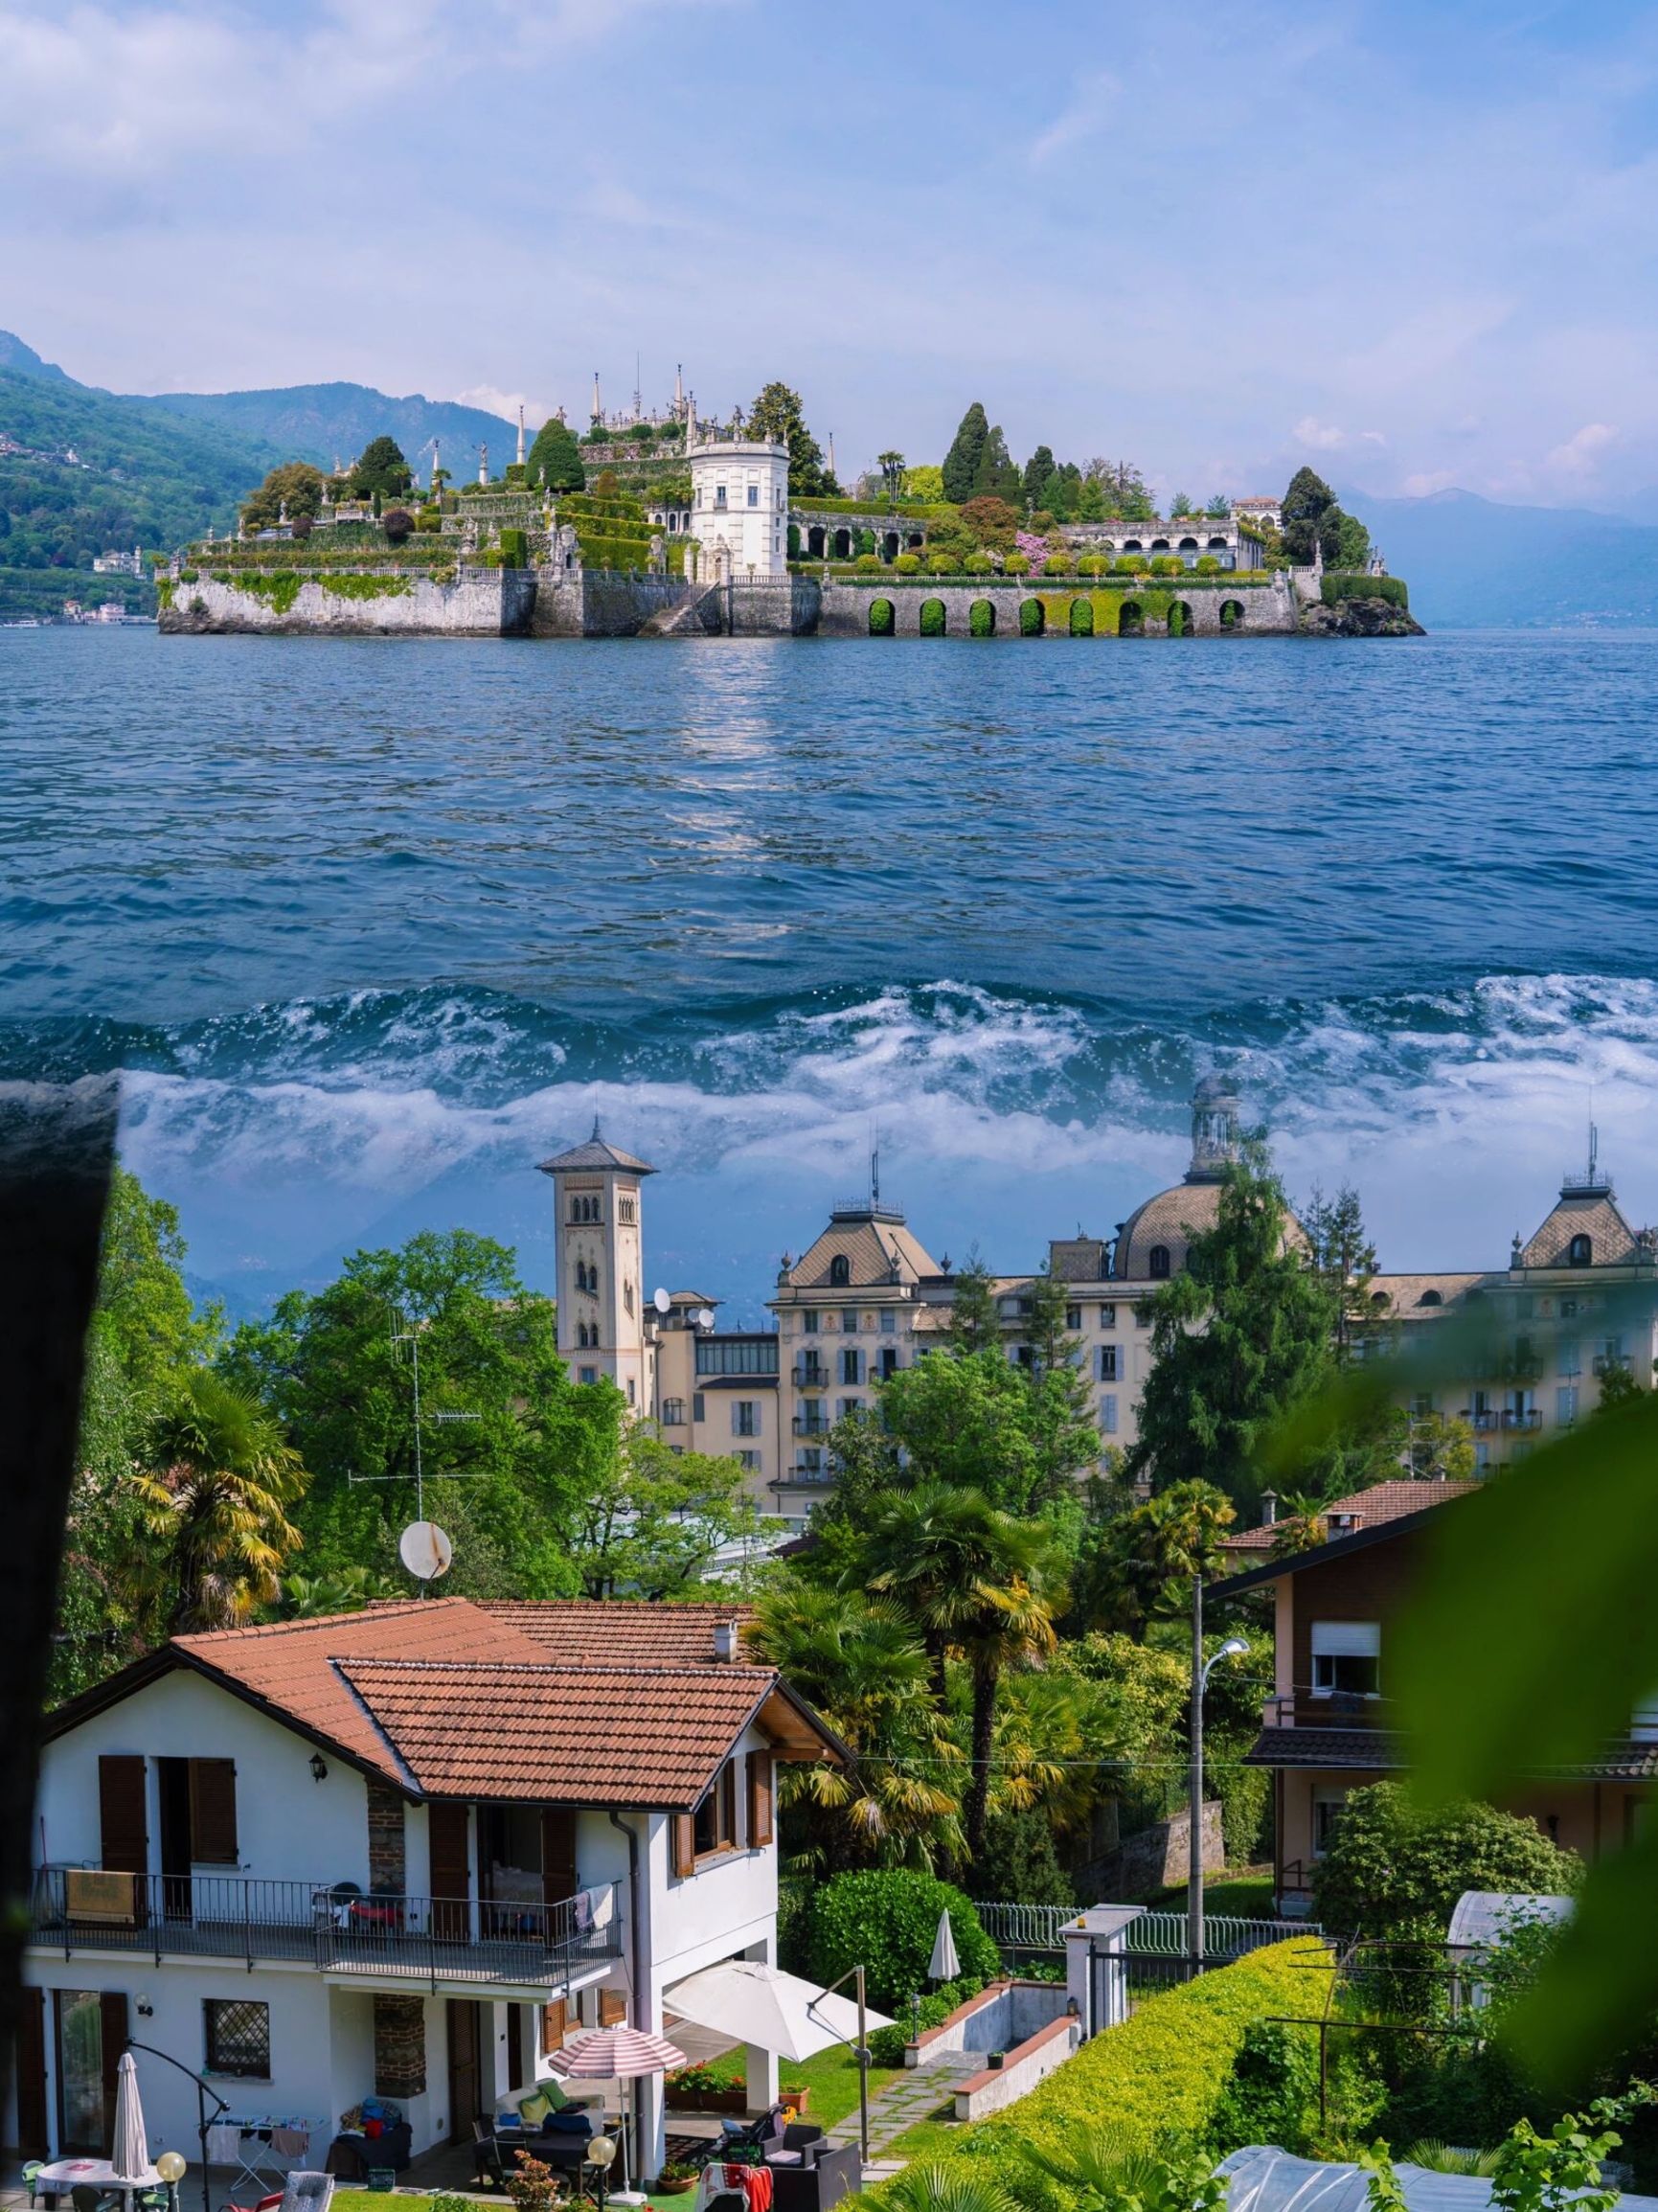 意大利贝拉岛🌊漂浮在湖泊中的宫殿花园